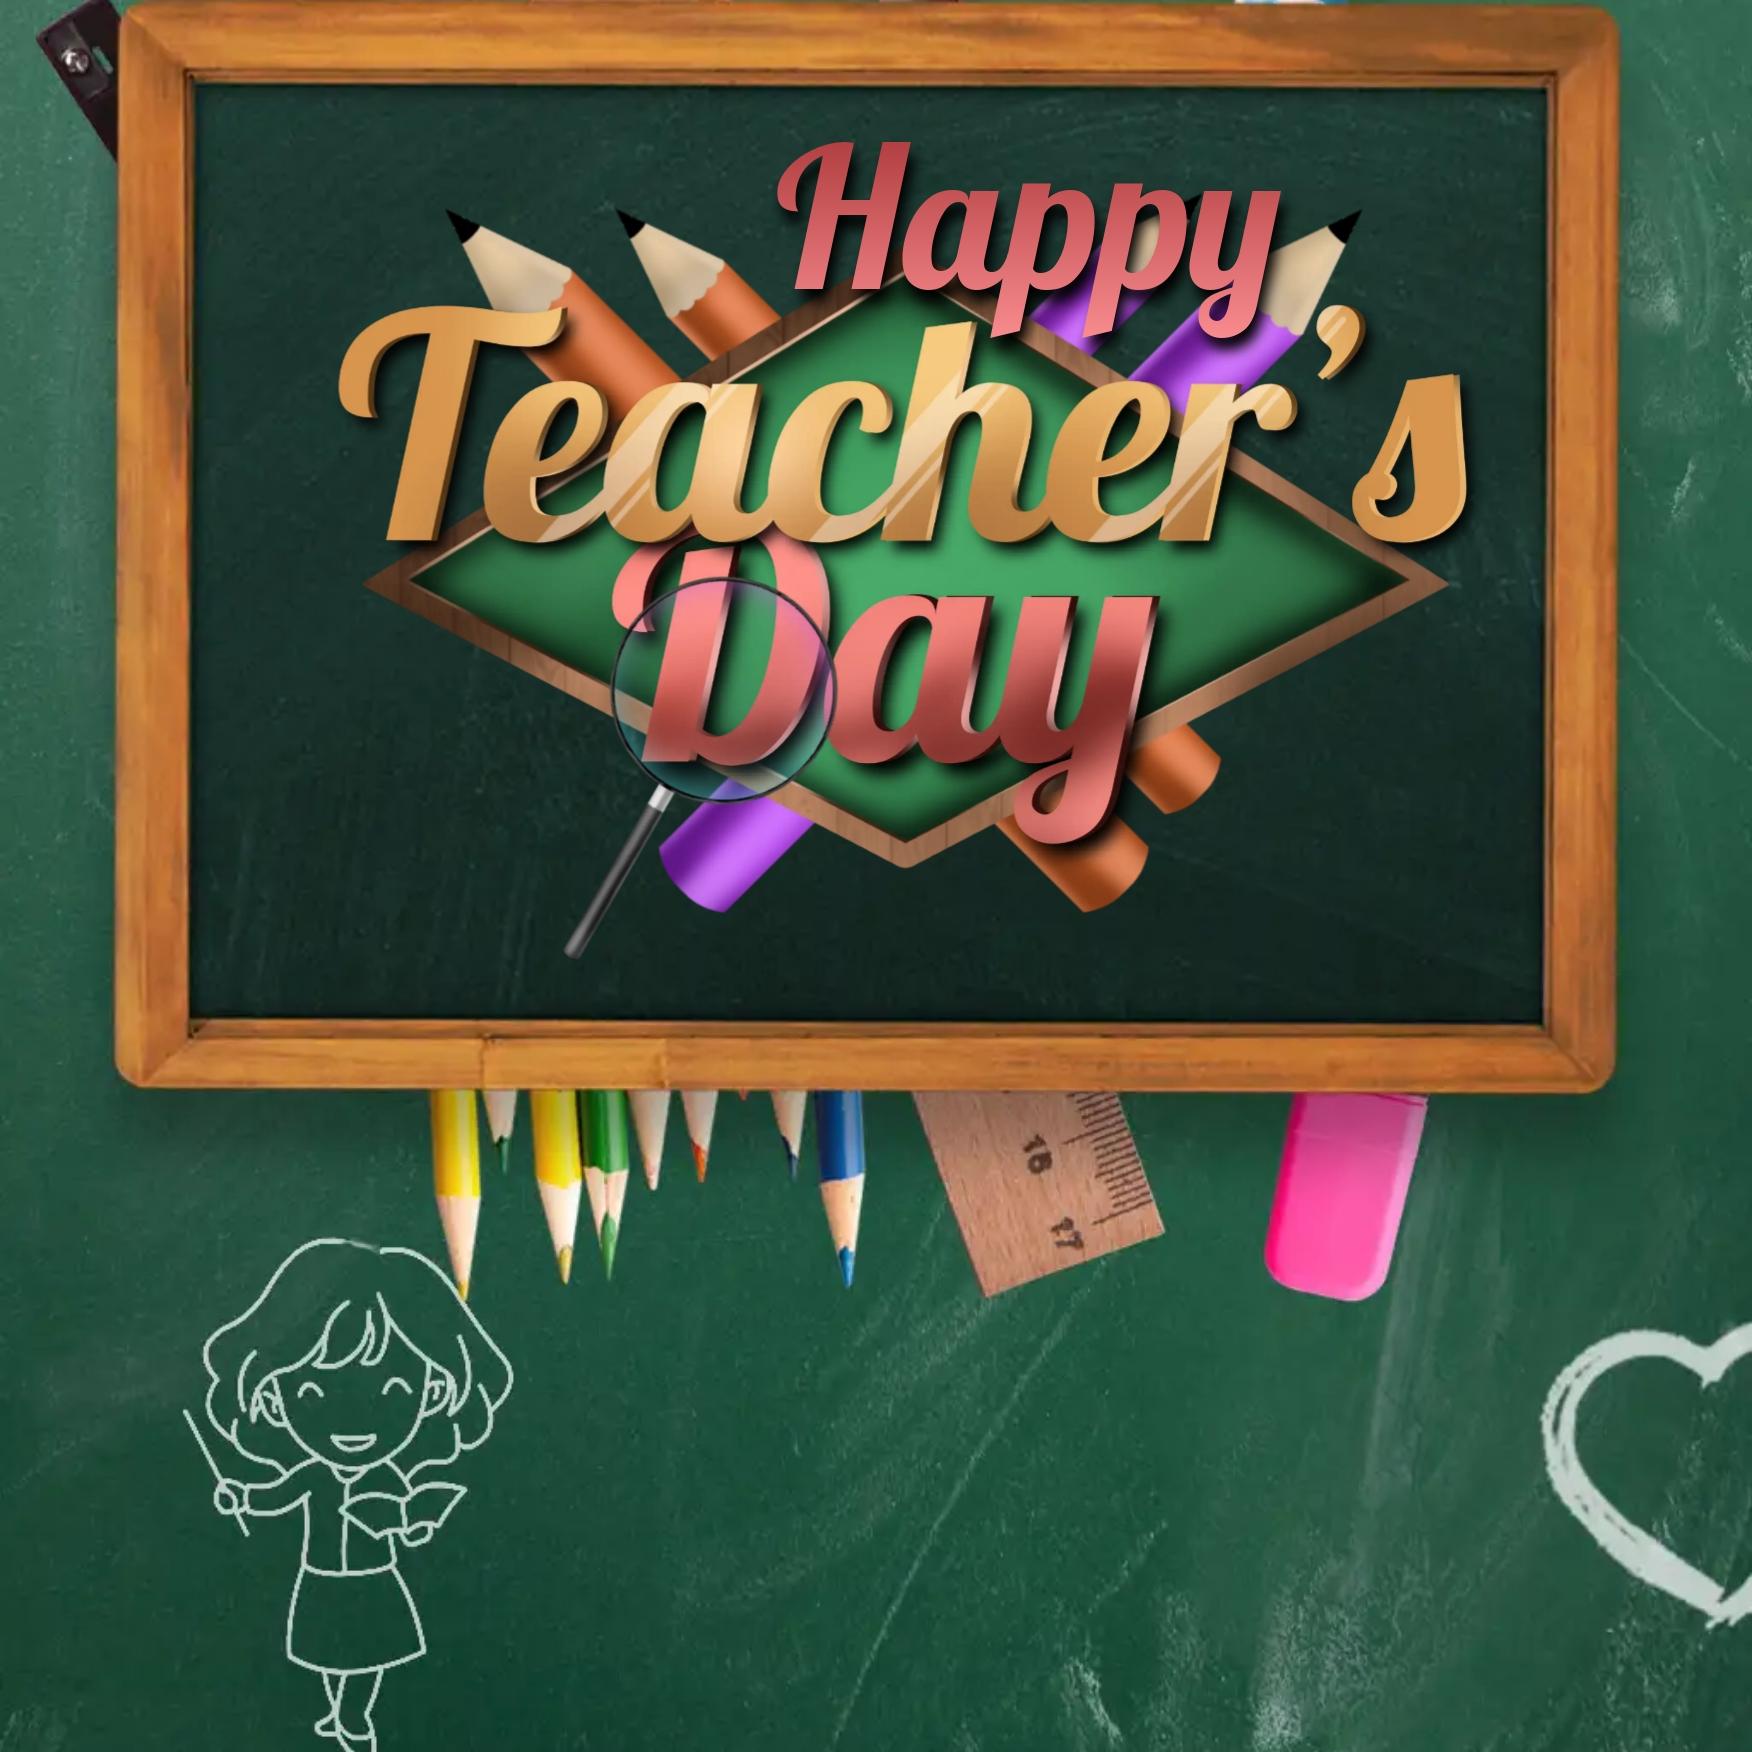 Teachers Day Message